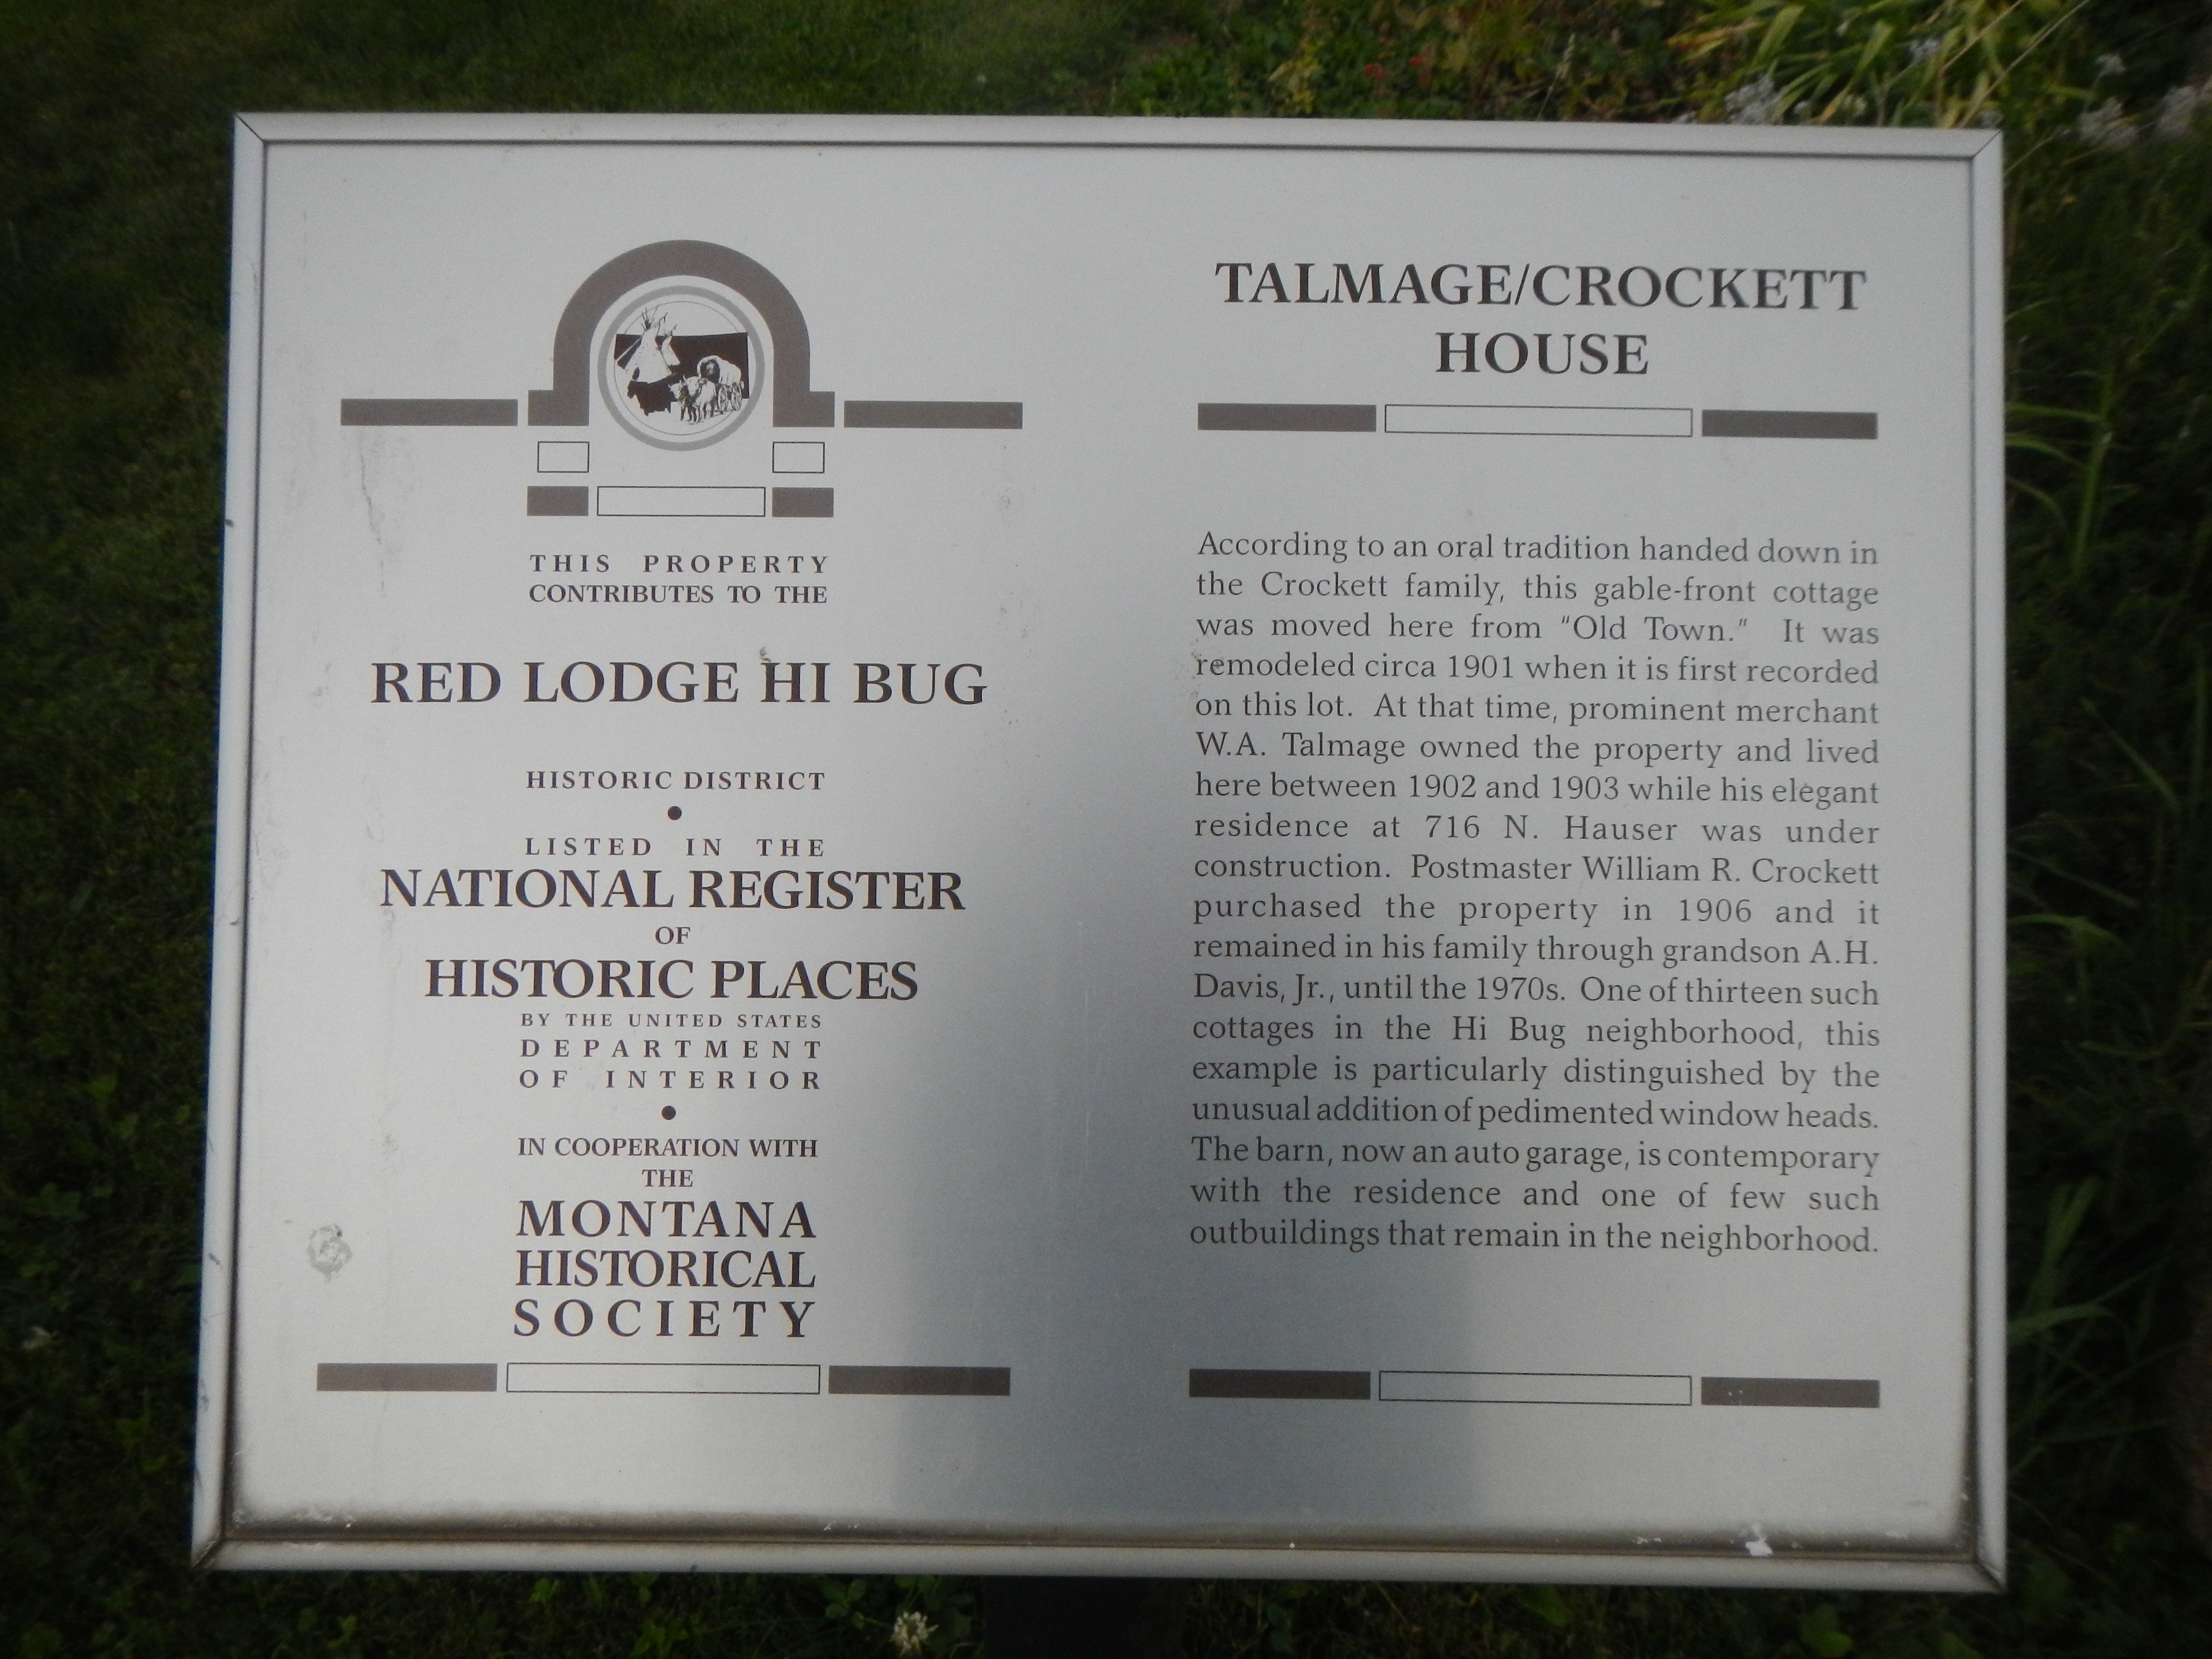 Talmage/Crockett House Marker